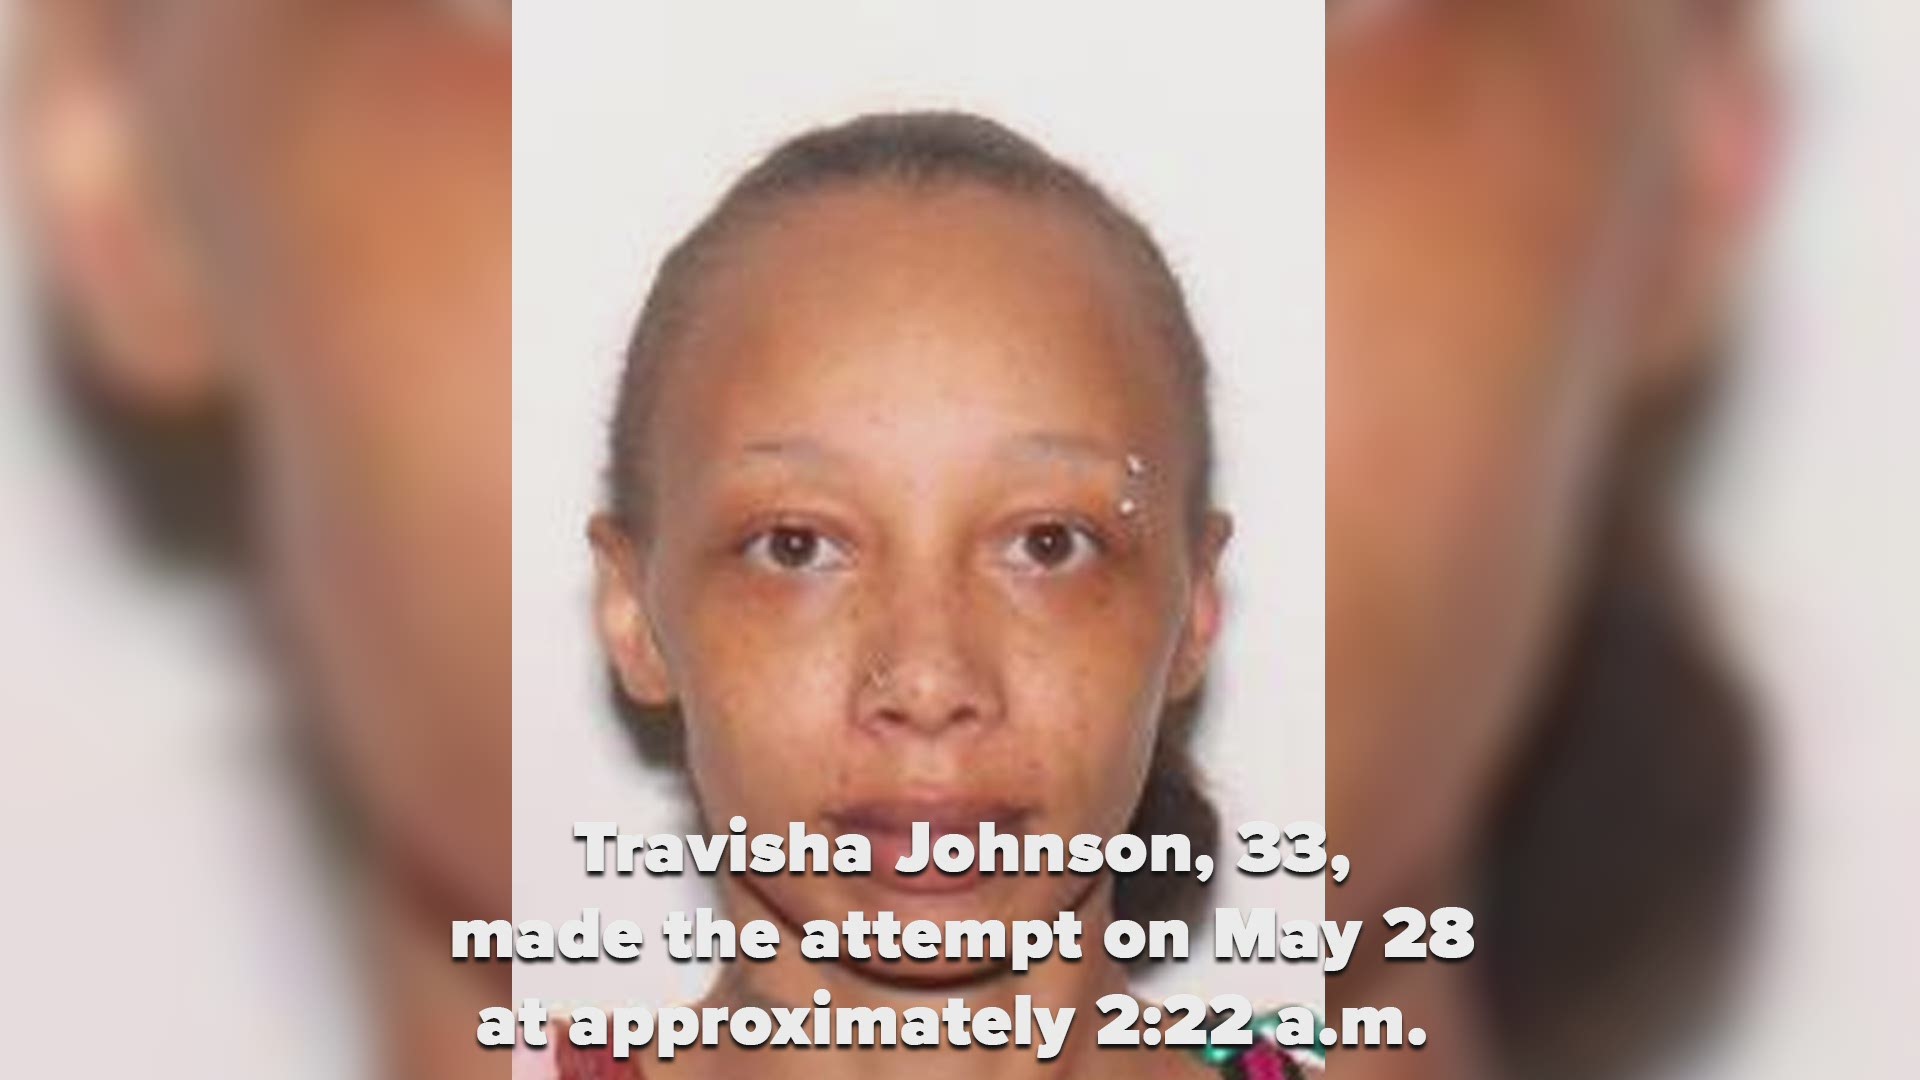 Travisha Watson, 33, made the attempt on May 28.